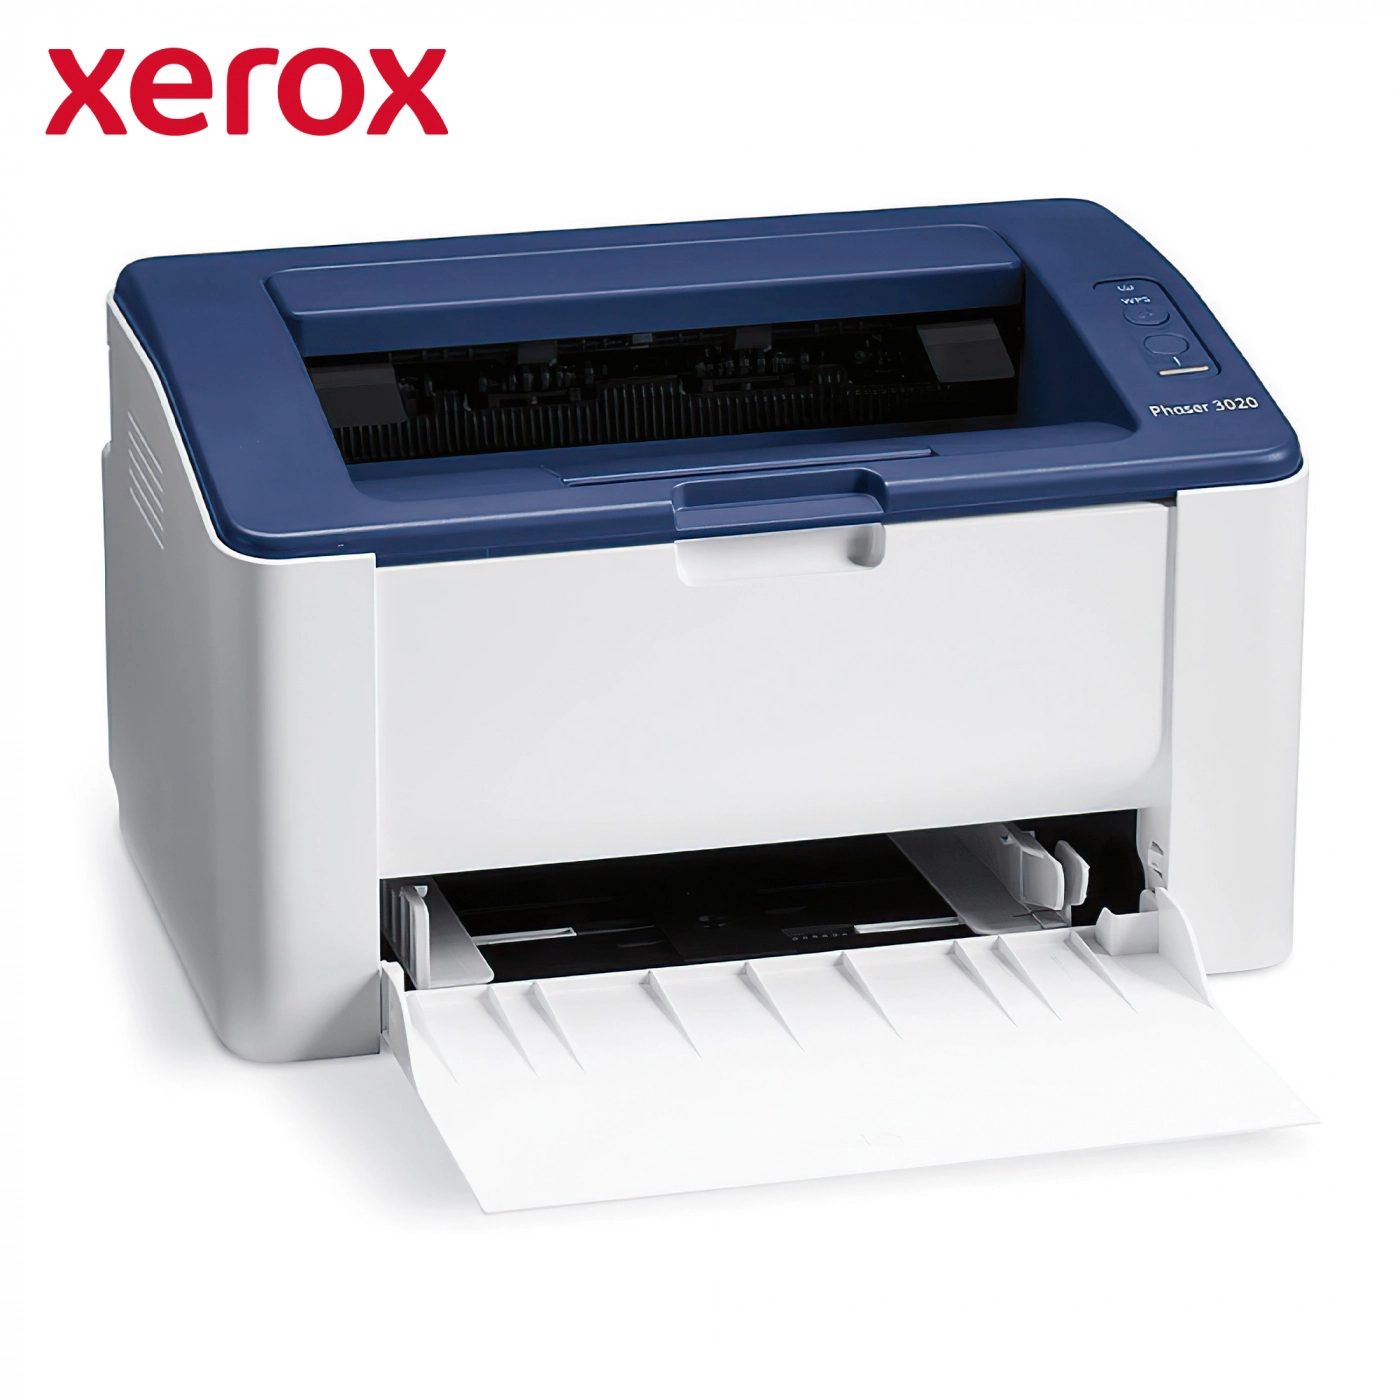 Купить Принтер А4 Xerox Phaser 3020BI (Wi-Fi) - фото 4